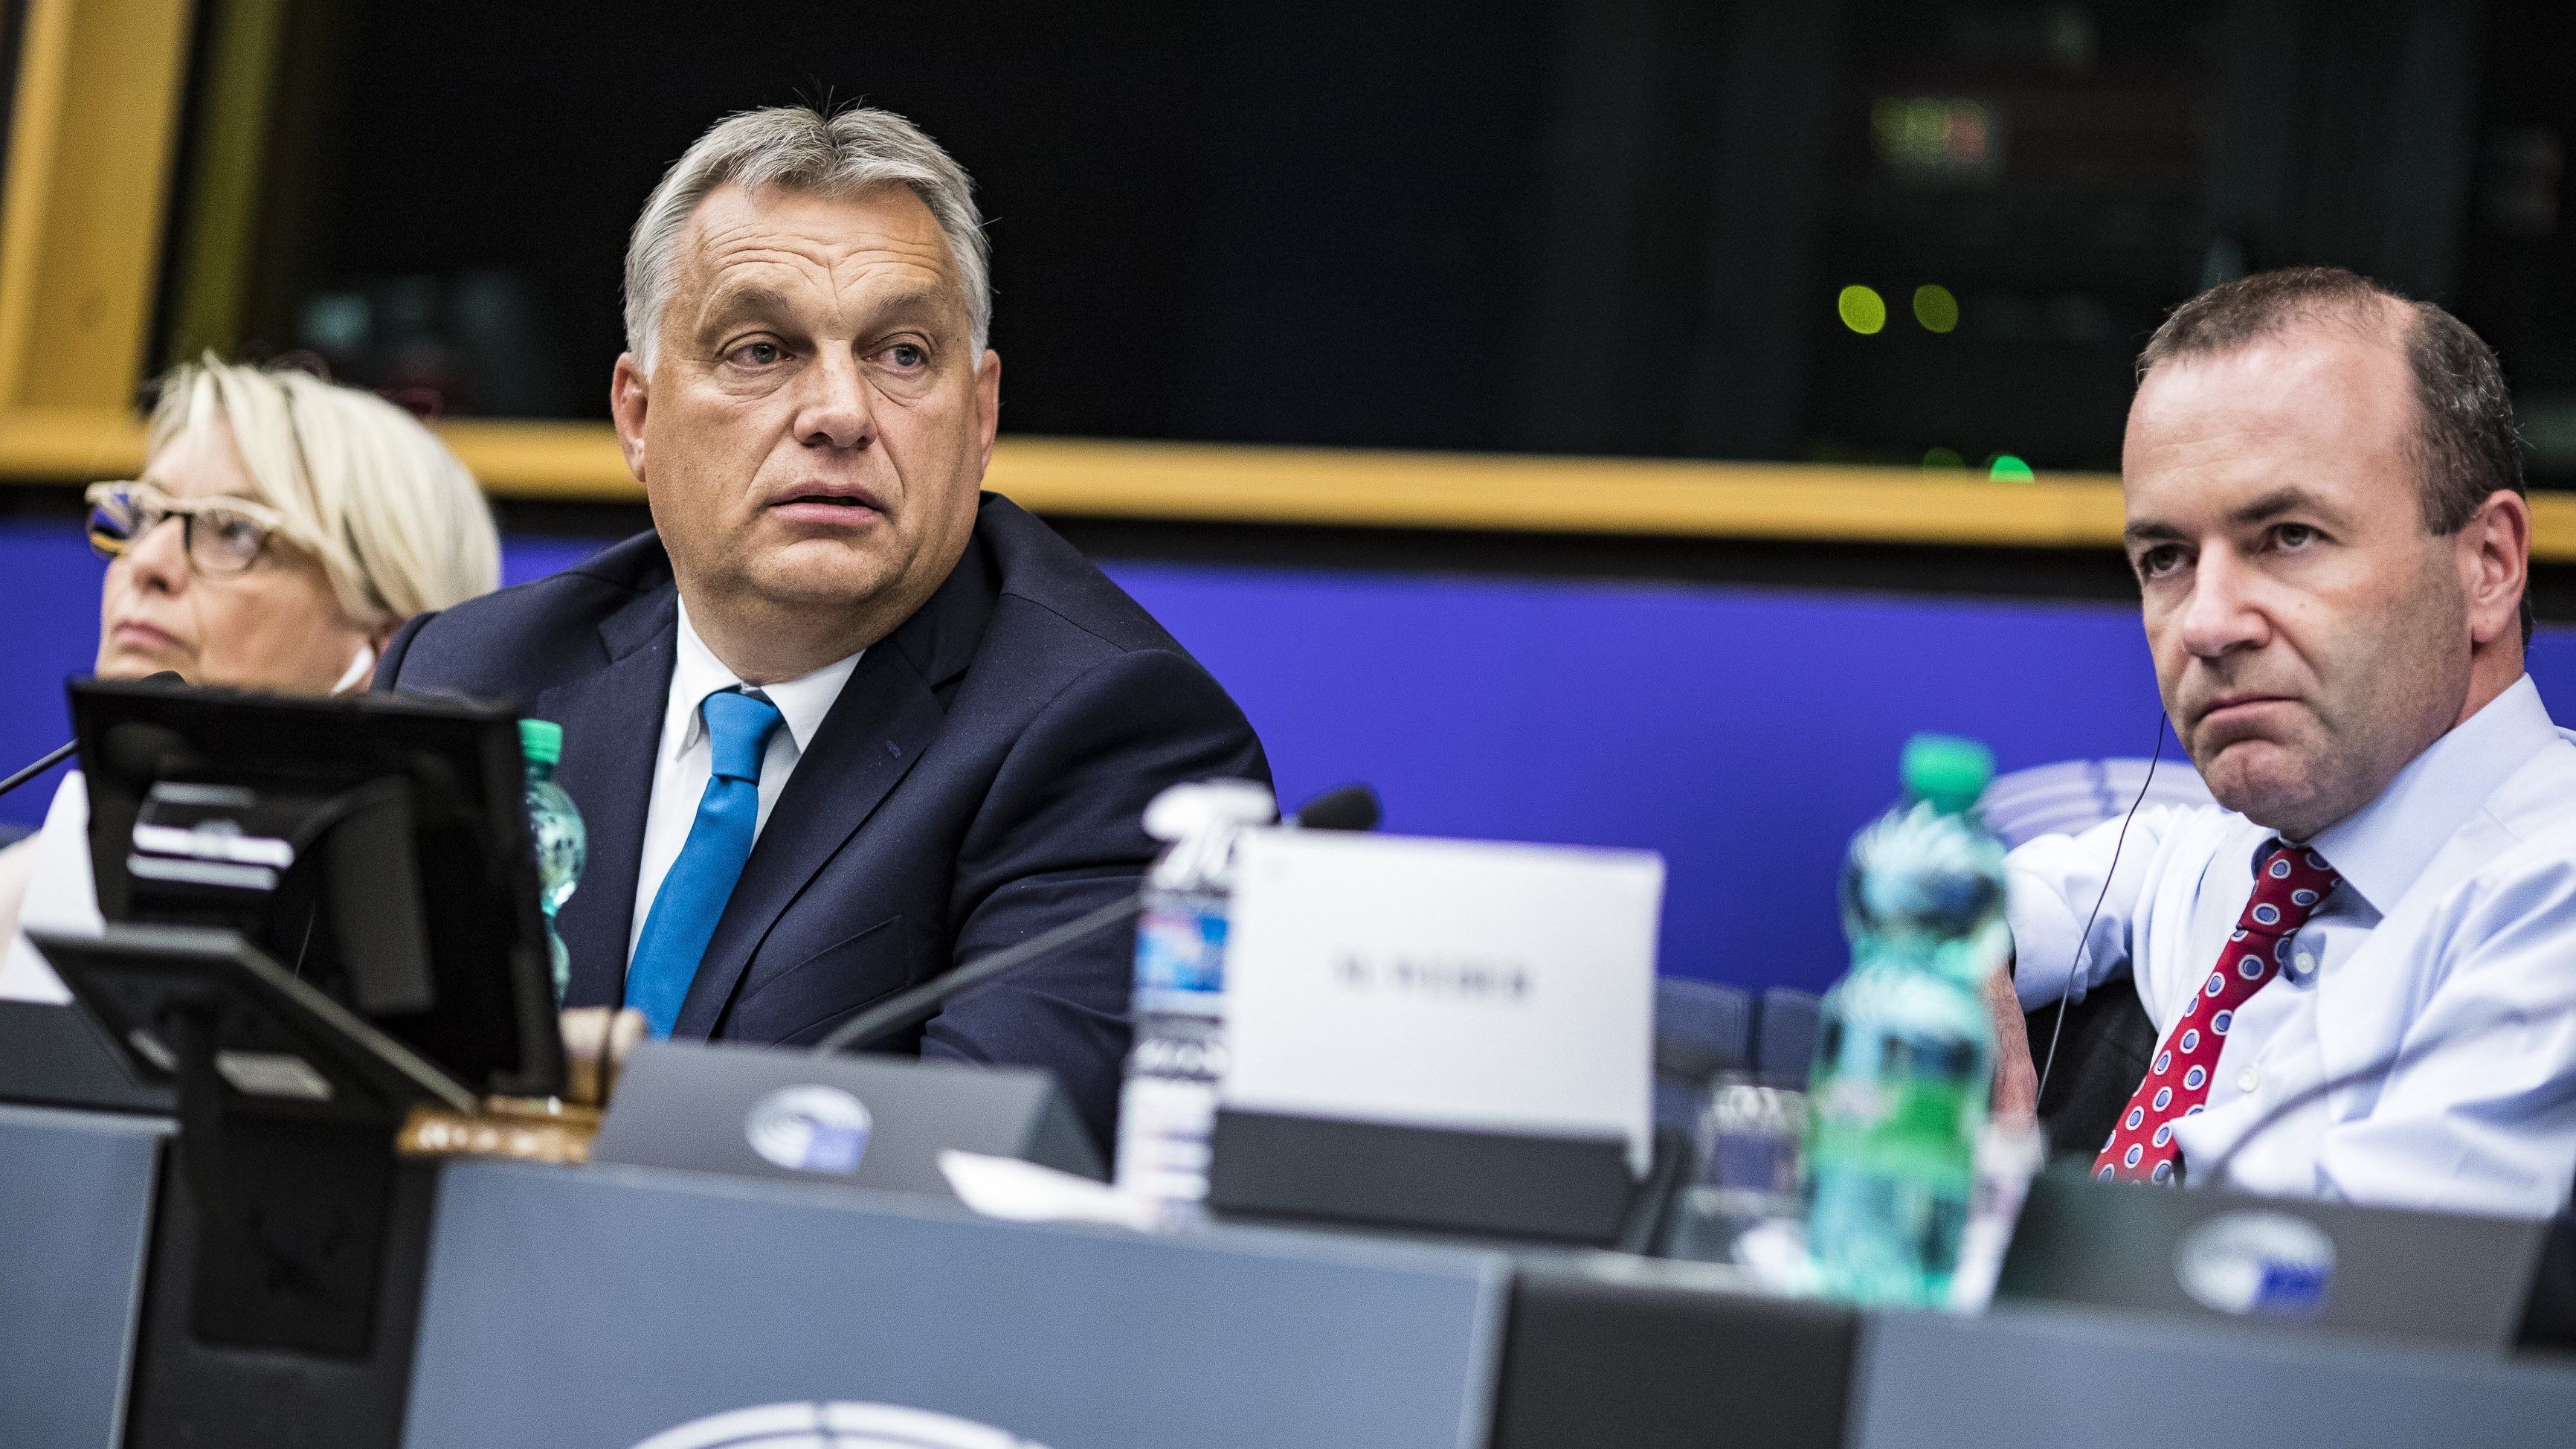 Der Standard: Magyarország régiós csúcstartó, de Orbán stratégiája rövidtávra szól